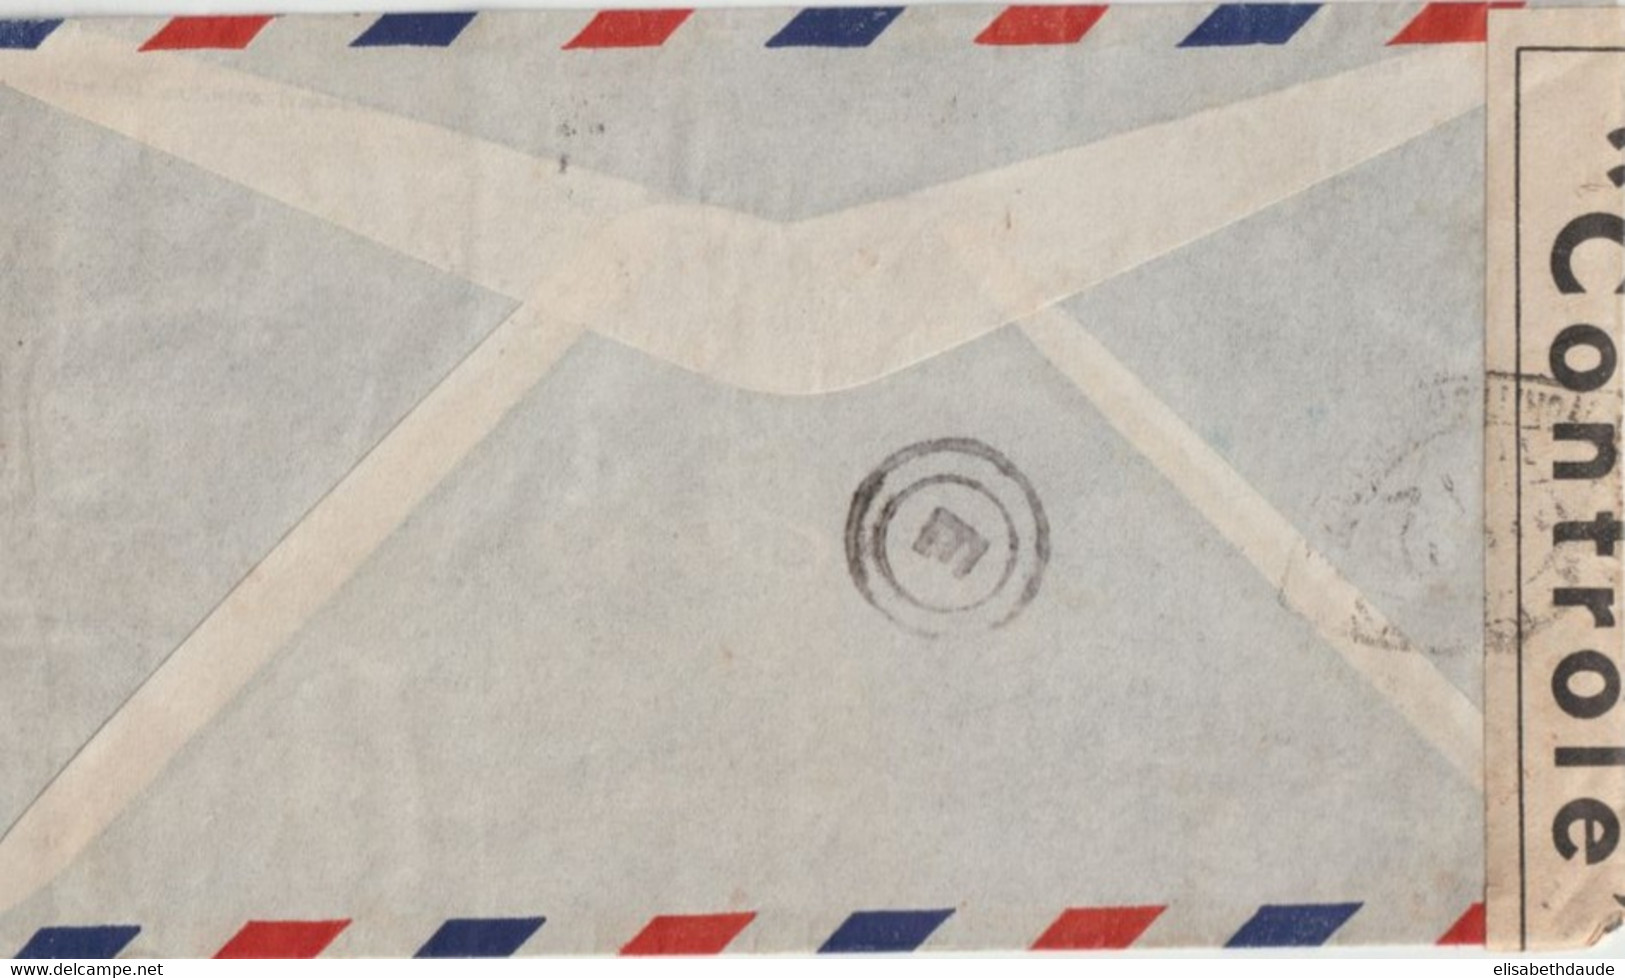 1941 - USA - POSTE AERIENNE - ENVELOPPE AIR MAIL Avec CENSURE FRANCAISE De SAINT JAMES => GENSAC (ZONE LIBRE FRANCE) - Storia Postale